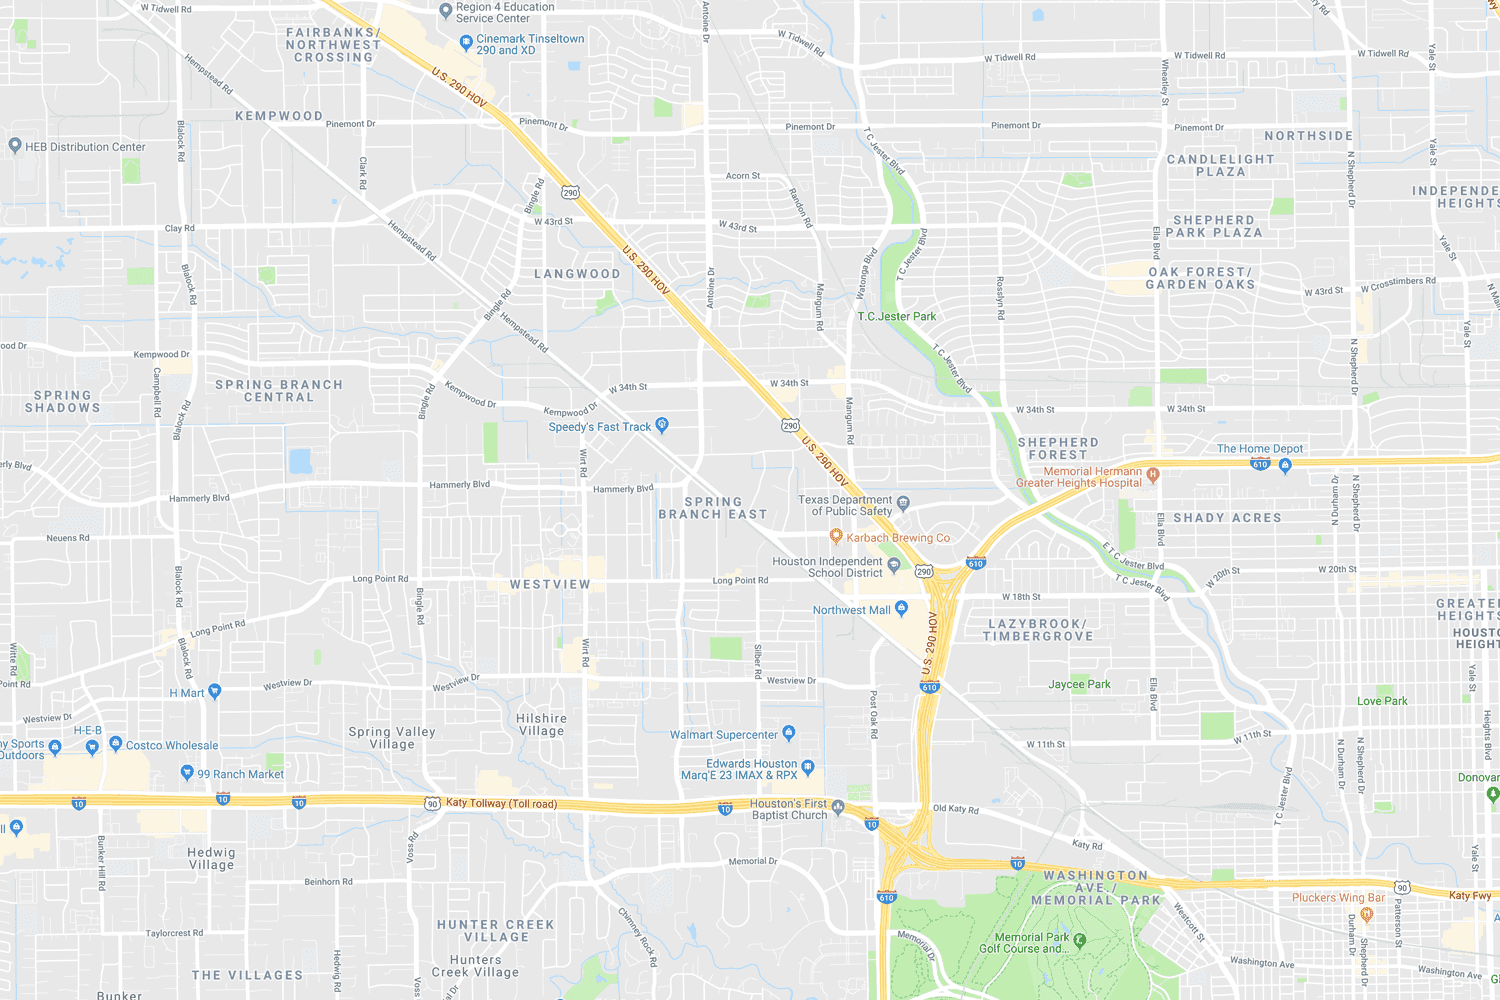 Map of Northwest Houston location